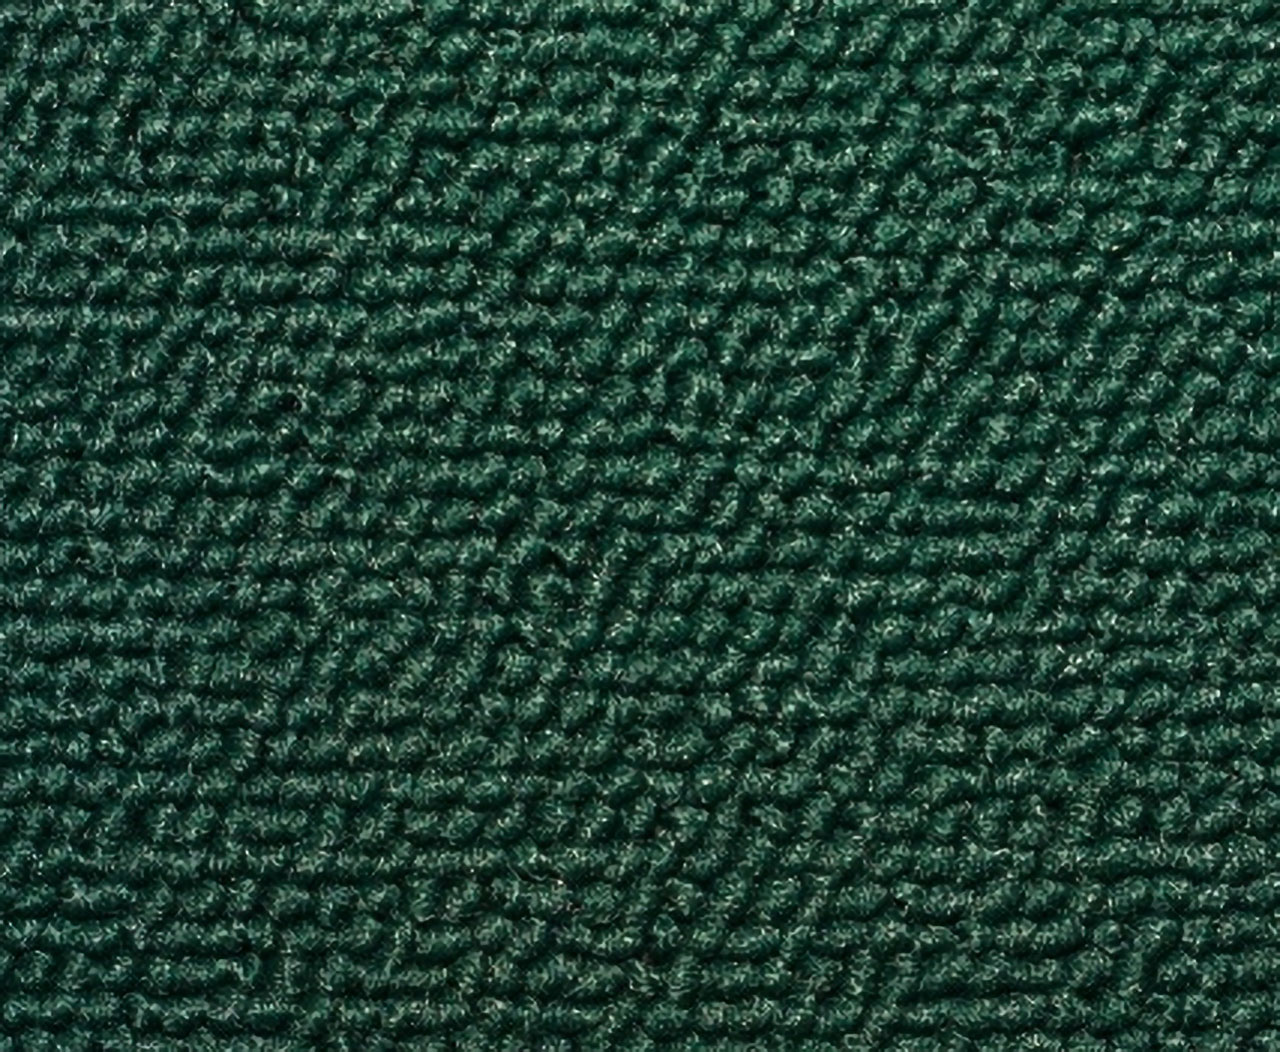 Holden Kingswood HG Kingswood Ute 16E Venetian Green Carpet (Image 1 of 1)